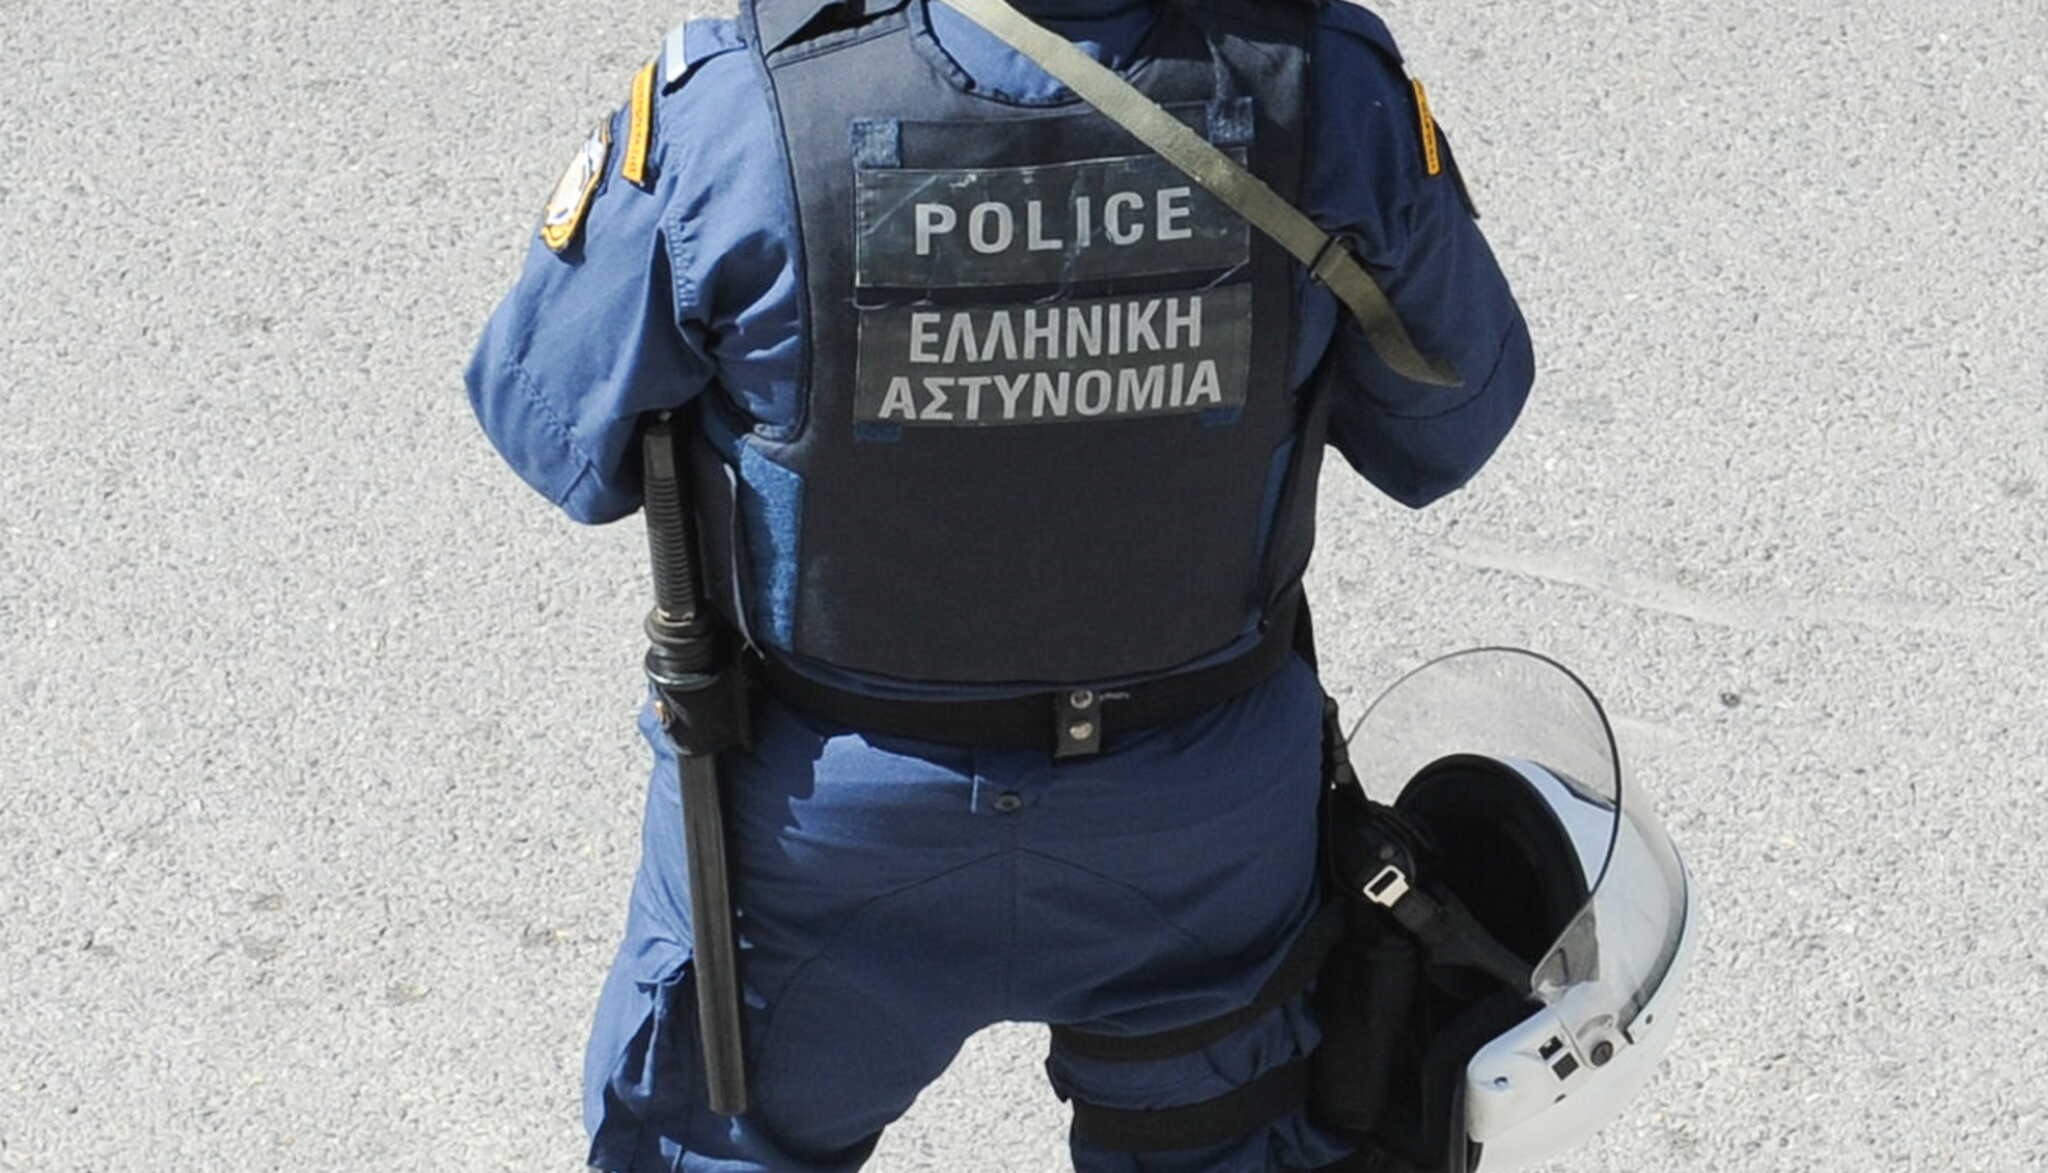 Ζάκυνθος: «Το μωρό έκαιγε» – Ο αστυνομικός περιγράφει πως έσωσε το μωρό μέσα από το αυτοκίνητο